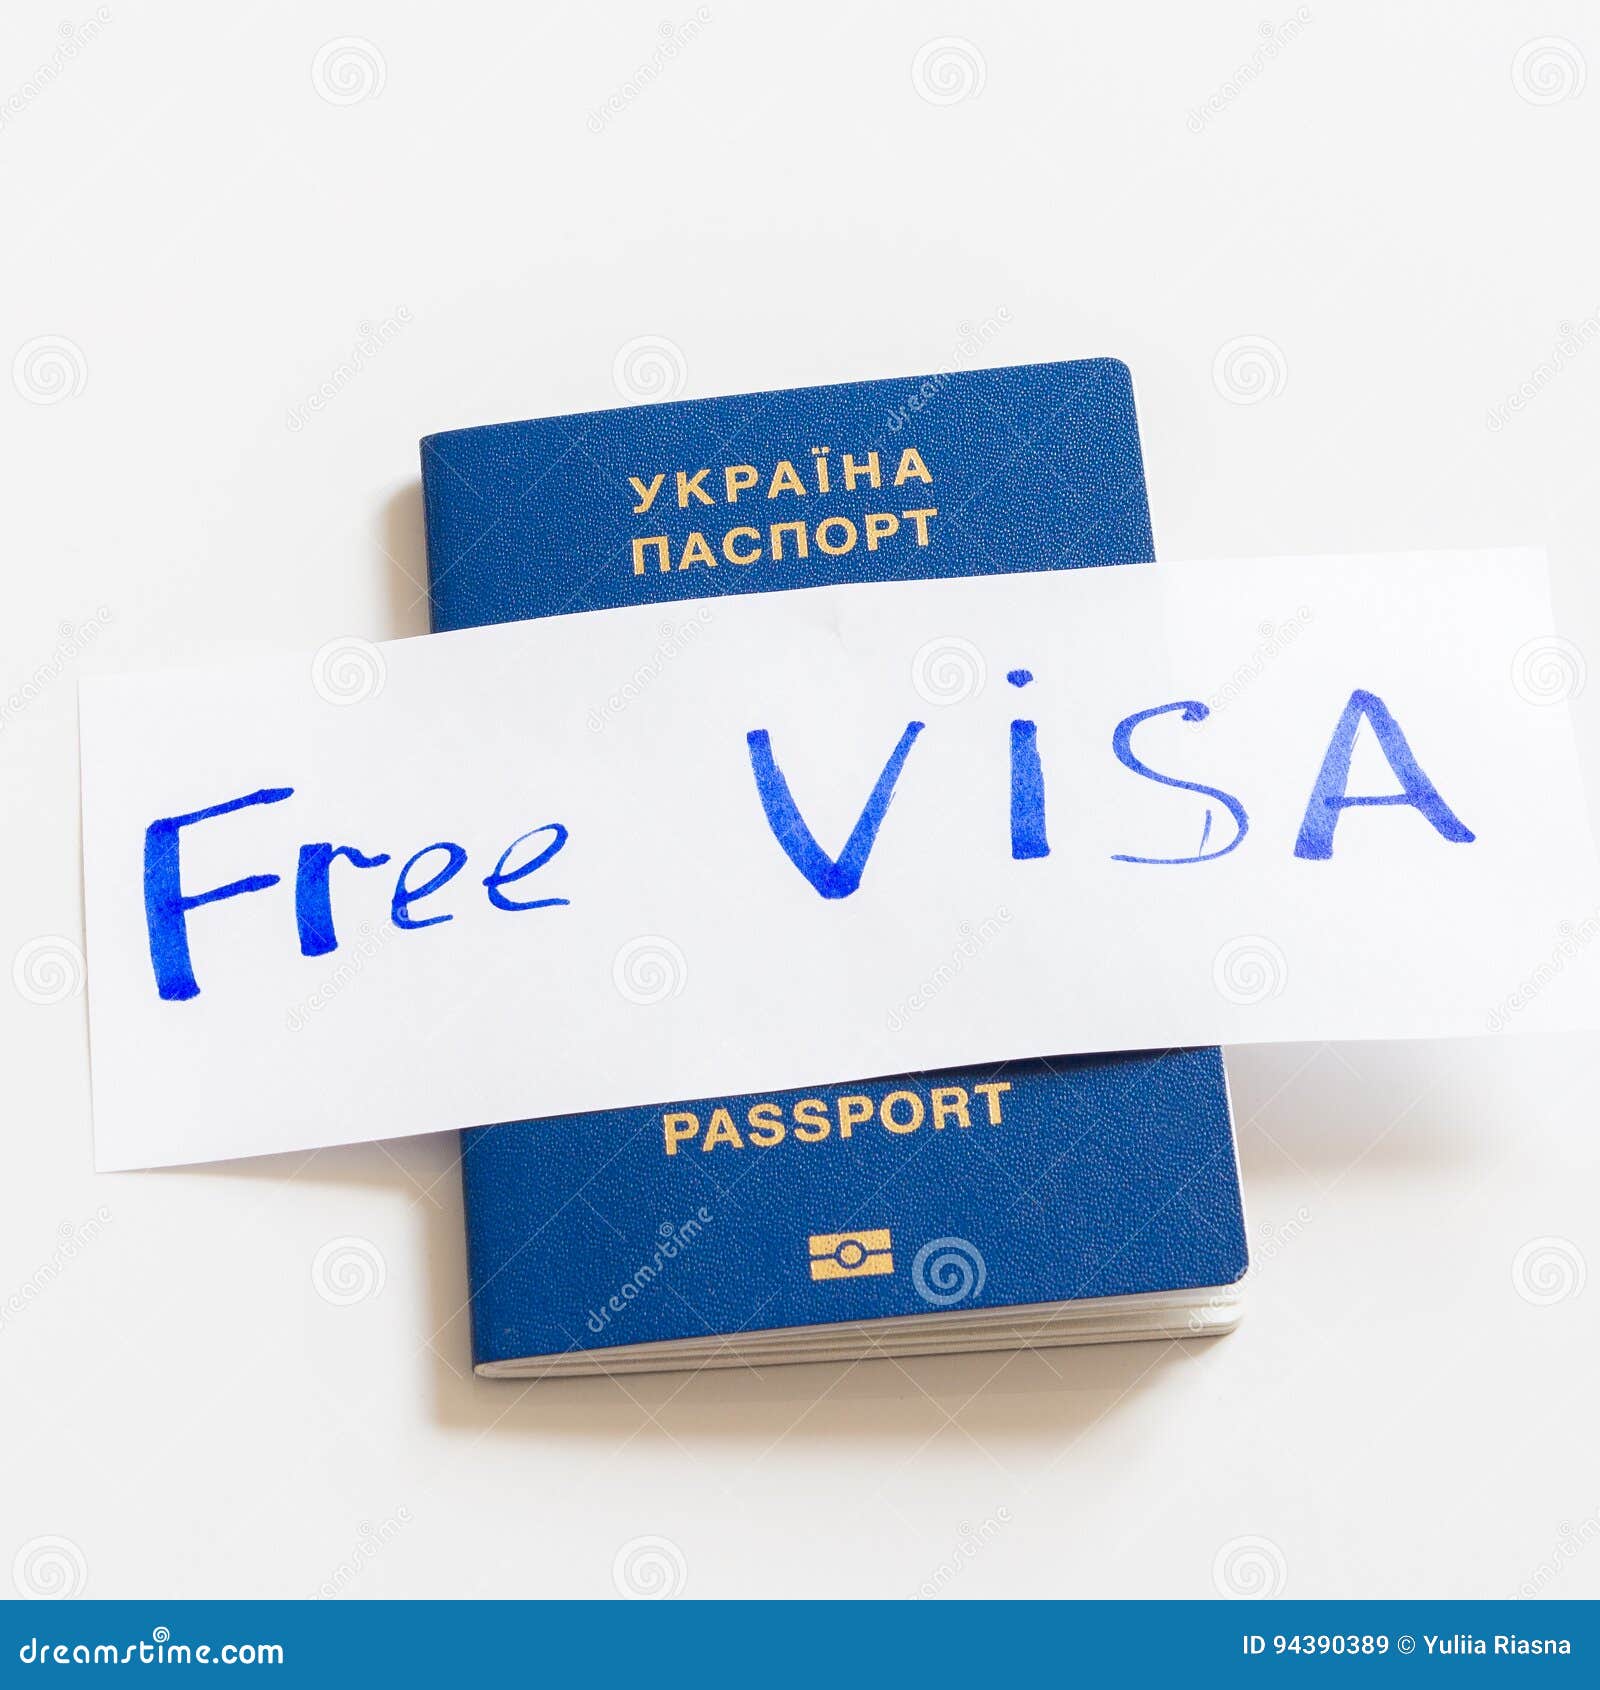 Hộ chiếu Ukraine biometric hiện là một loại hộ chiếu rất phổ biến trên thế giới. Tuy nhiên, không phải ai cũng biết đến những thông tin cần thiết về loại hộ chiếu này. Nếu bạn muốn tìm hiểu về hộ chiếu Ukraine biometric, hãy xem qua hình ảnh liên quan đến loại hộ chiếu này.